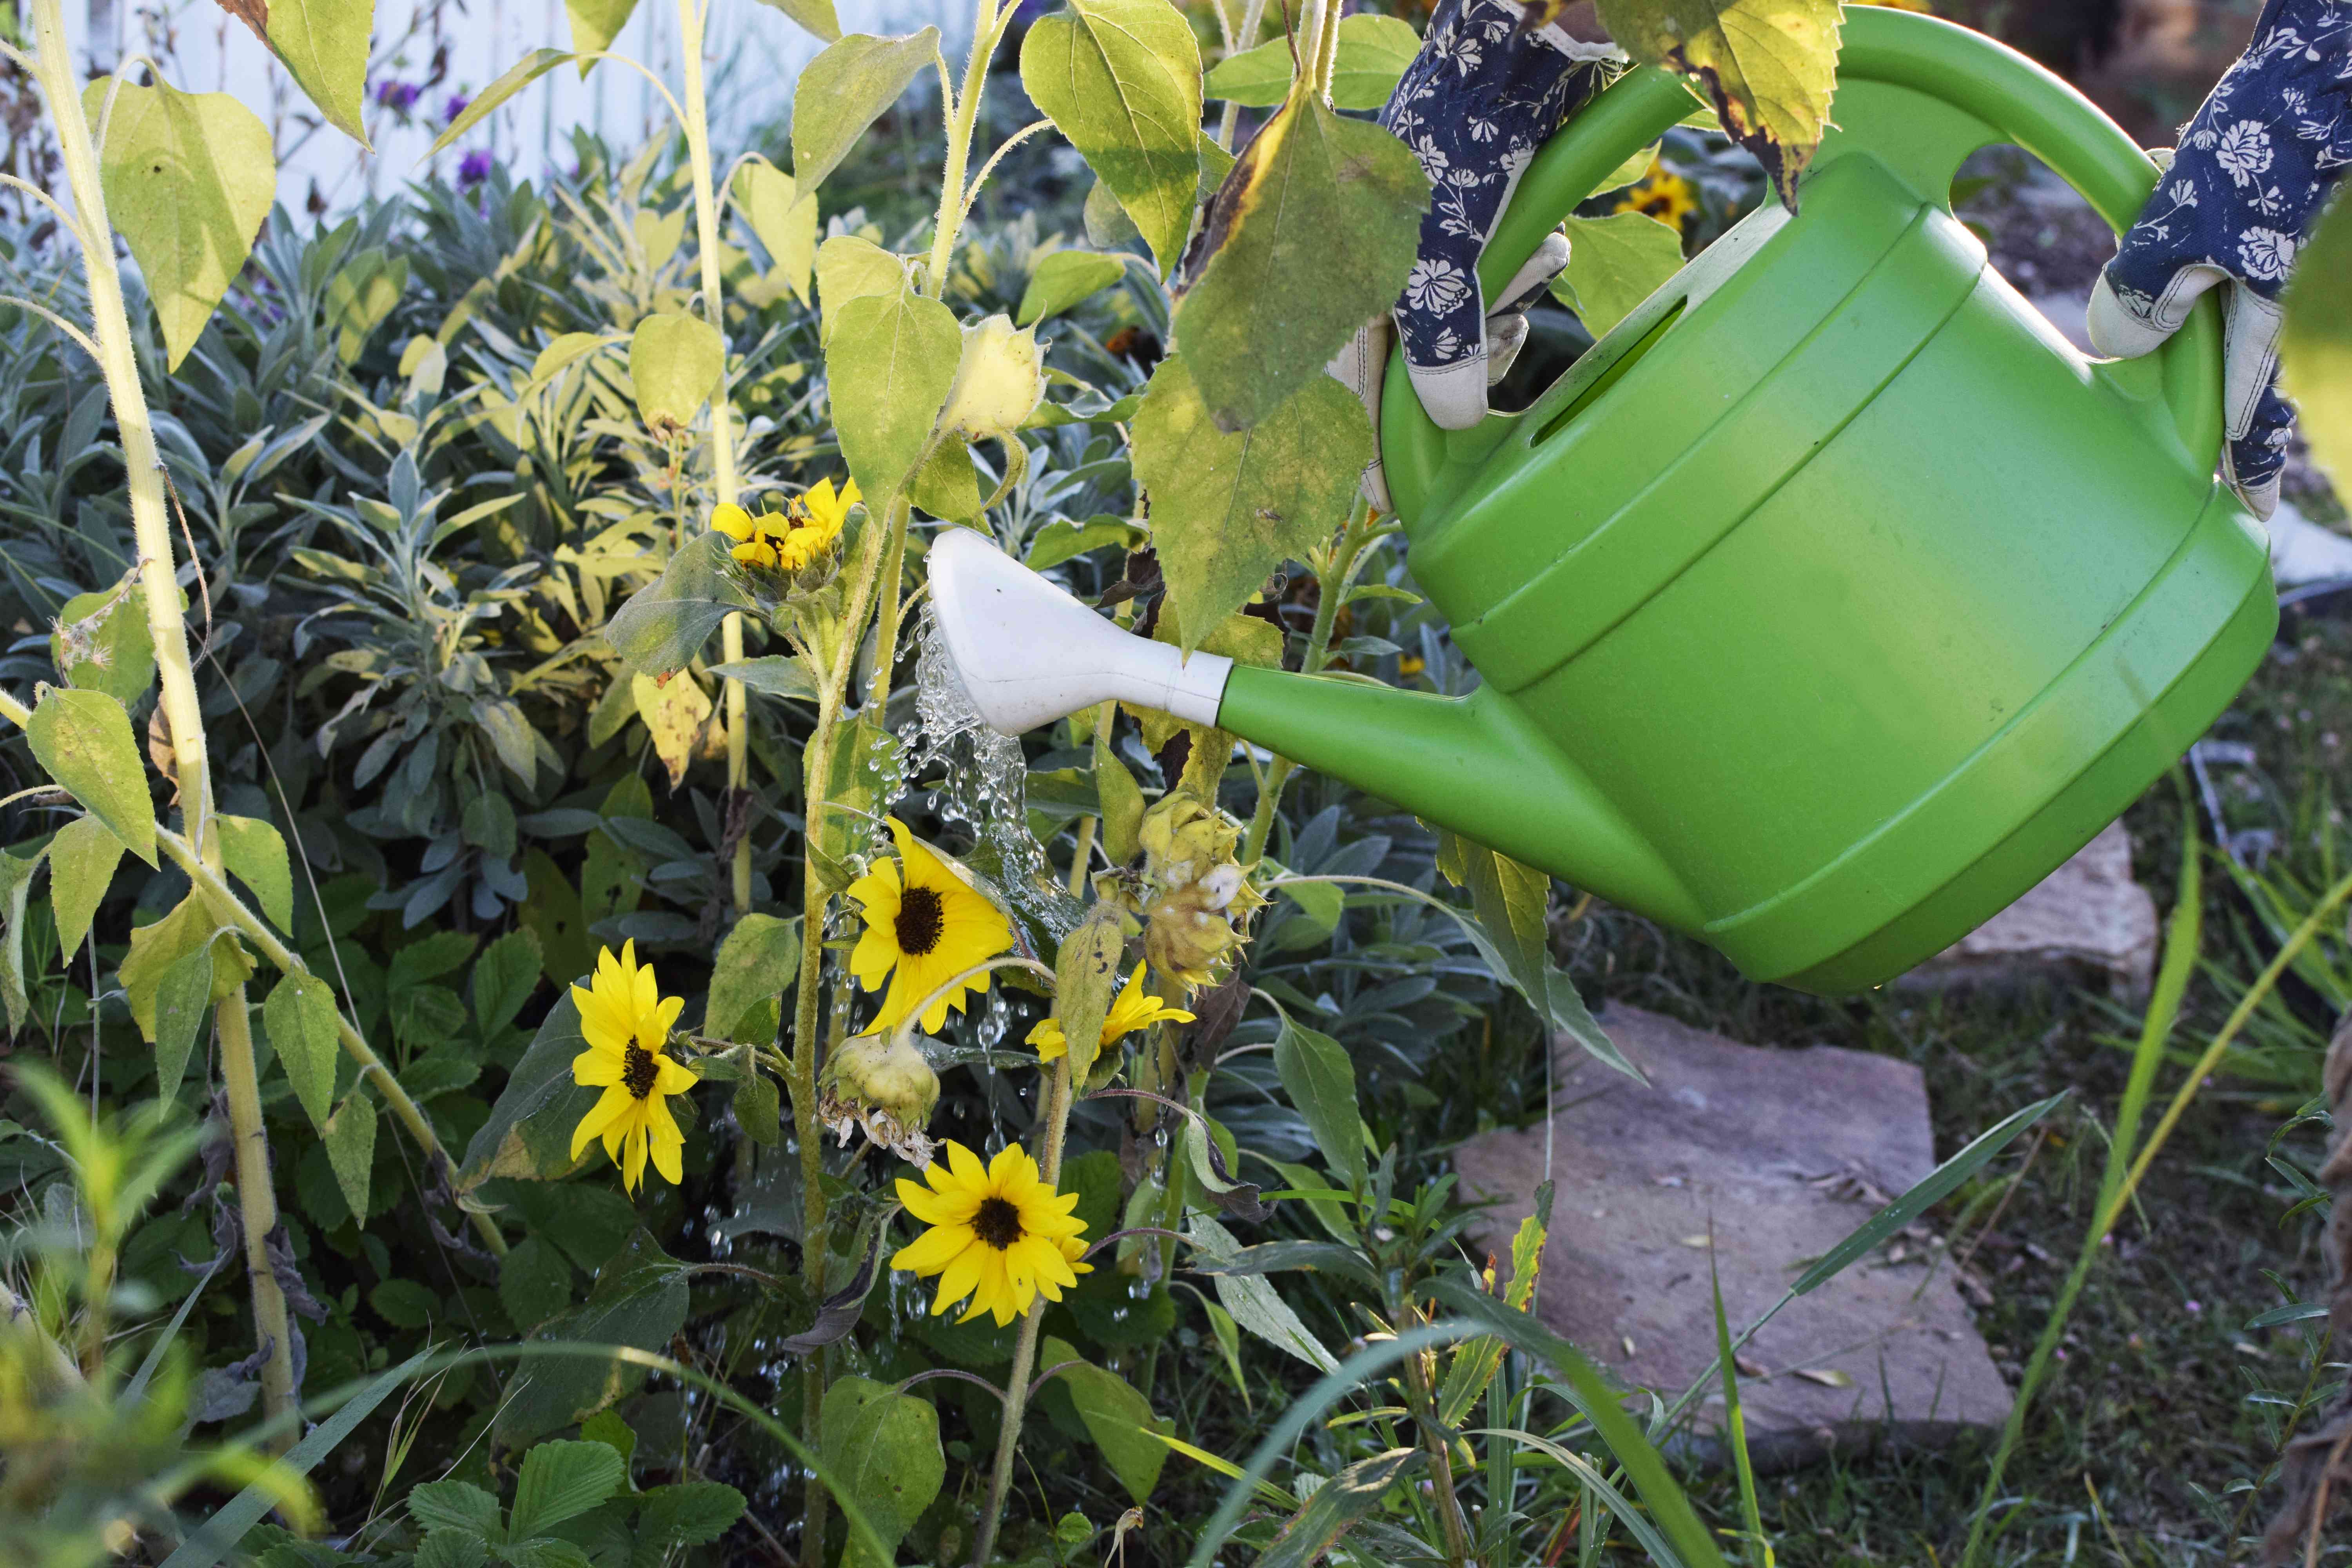 绿色喷壶是用来给生长在个人花园的向日葵浇水的